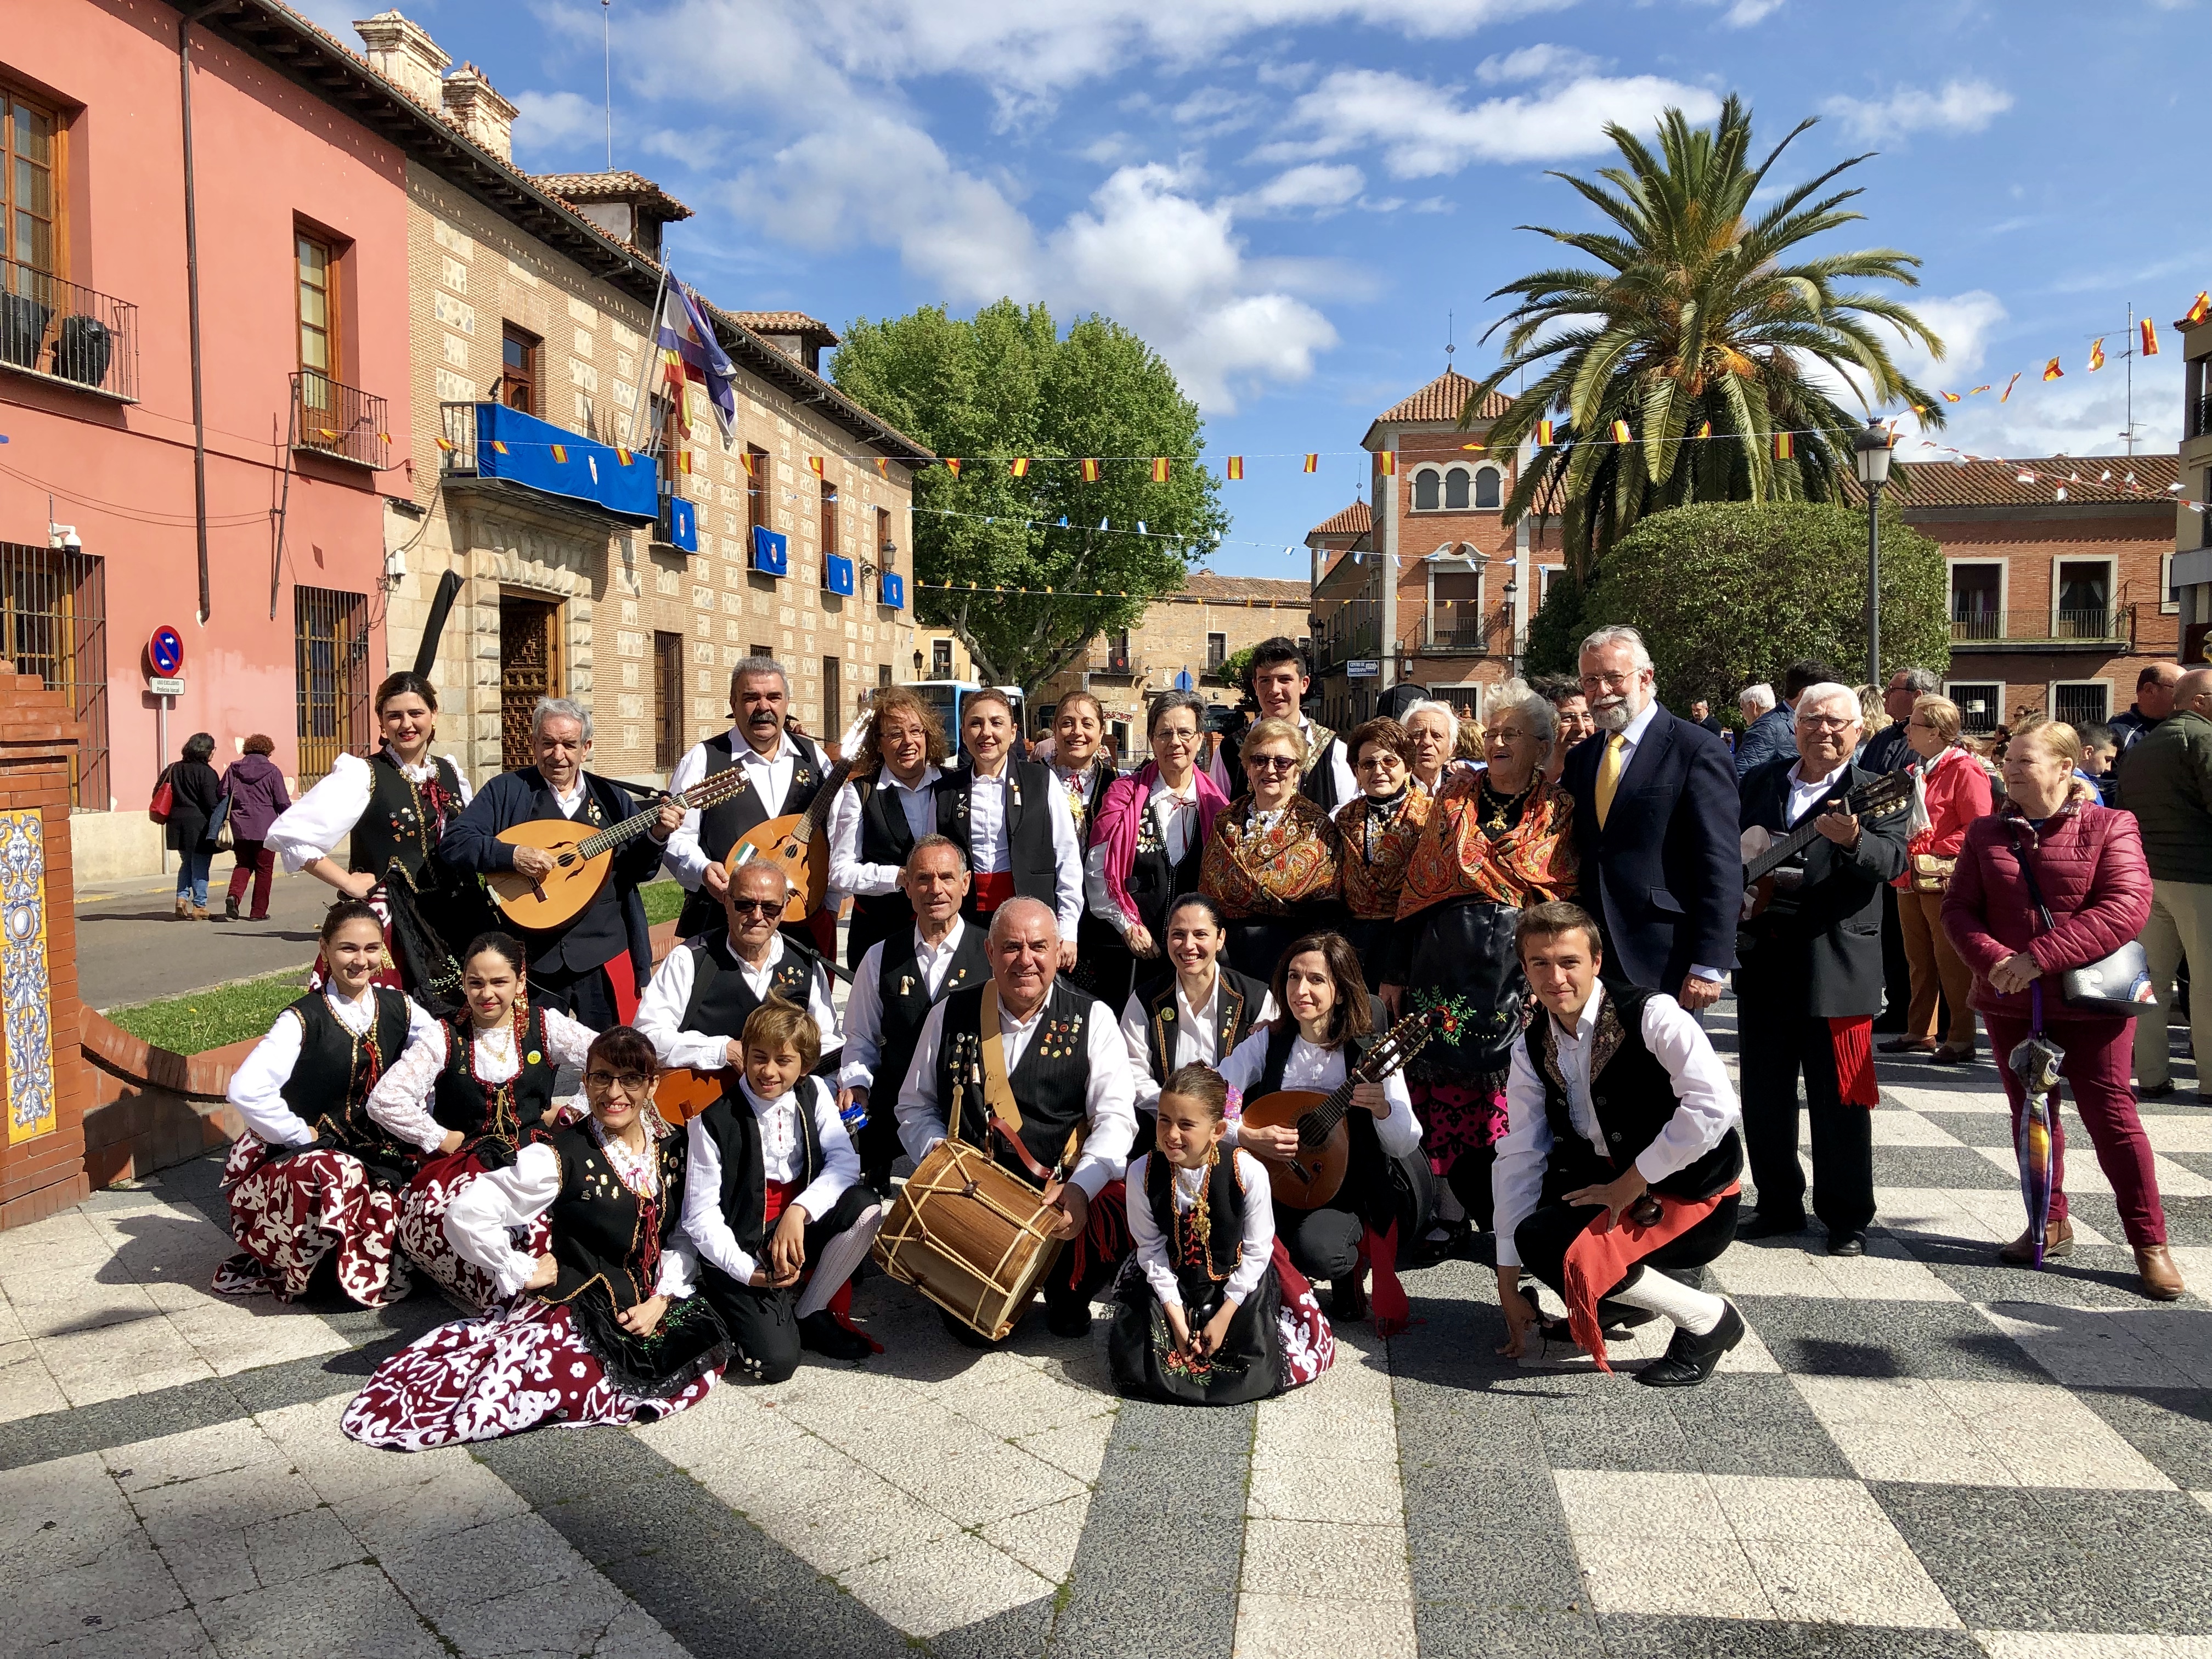 El alcalde de Talavera da inicio a la Fiesta de las Mondas 